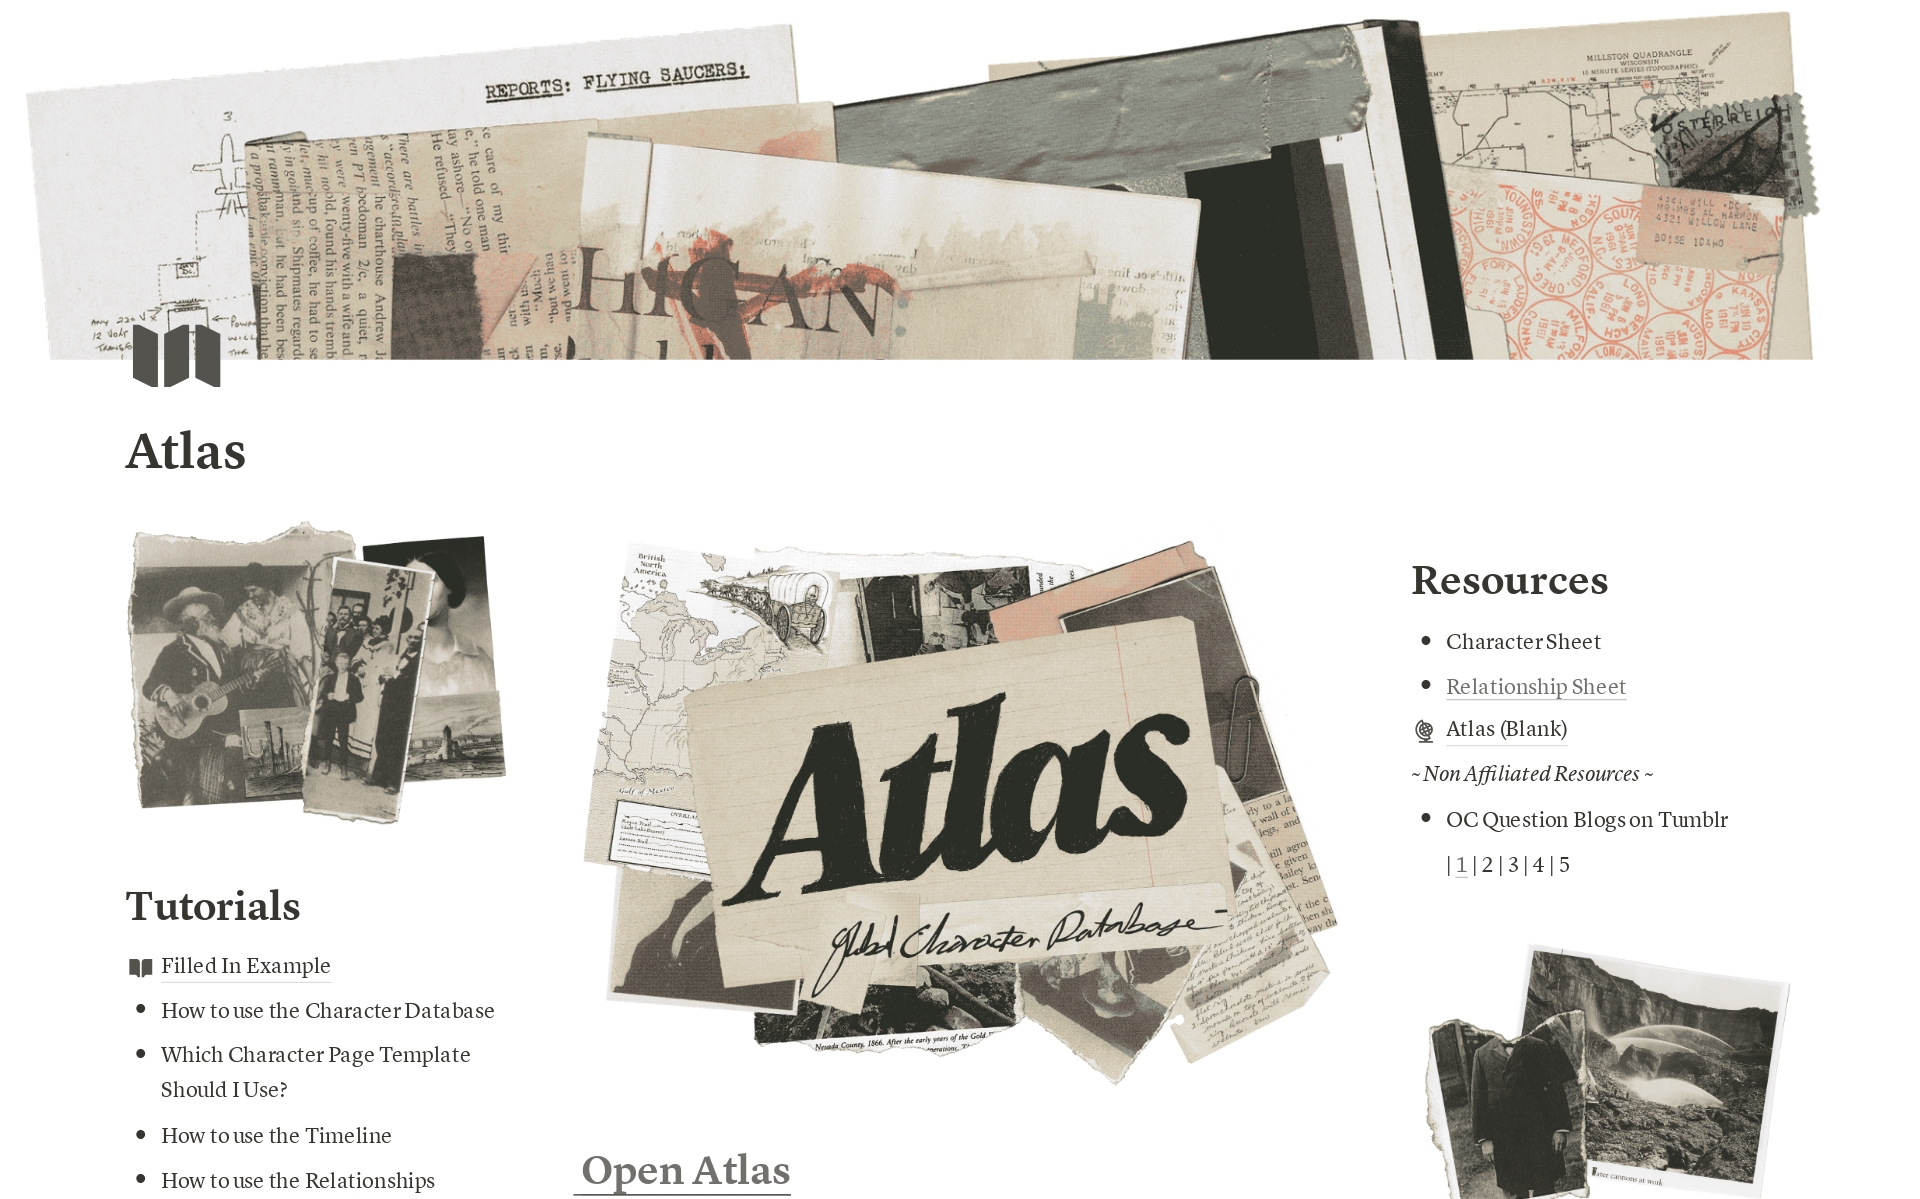 Aperçu du modèle de Atlas - Original Character Database